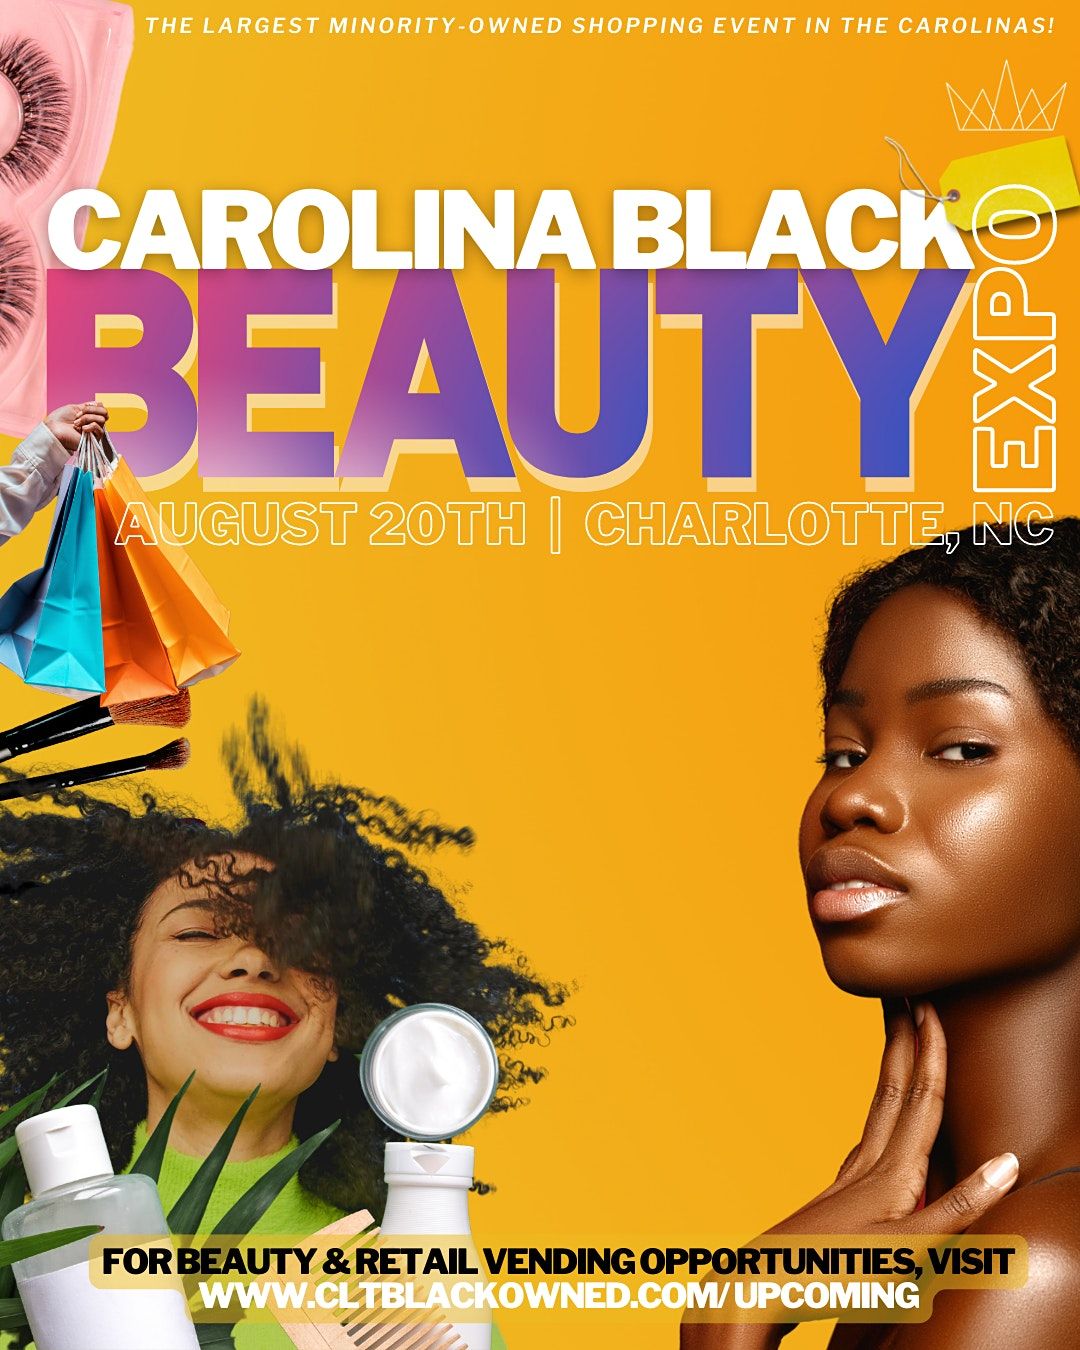 Carolina Black Beauty Expo